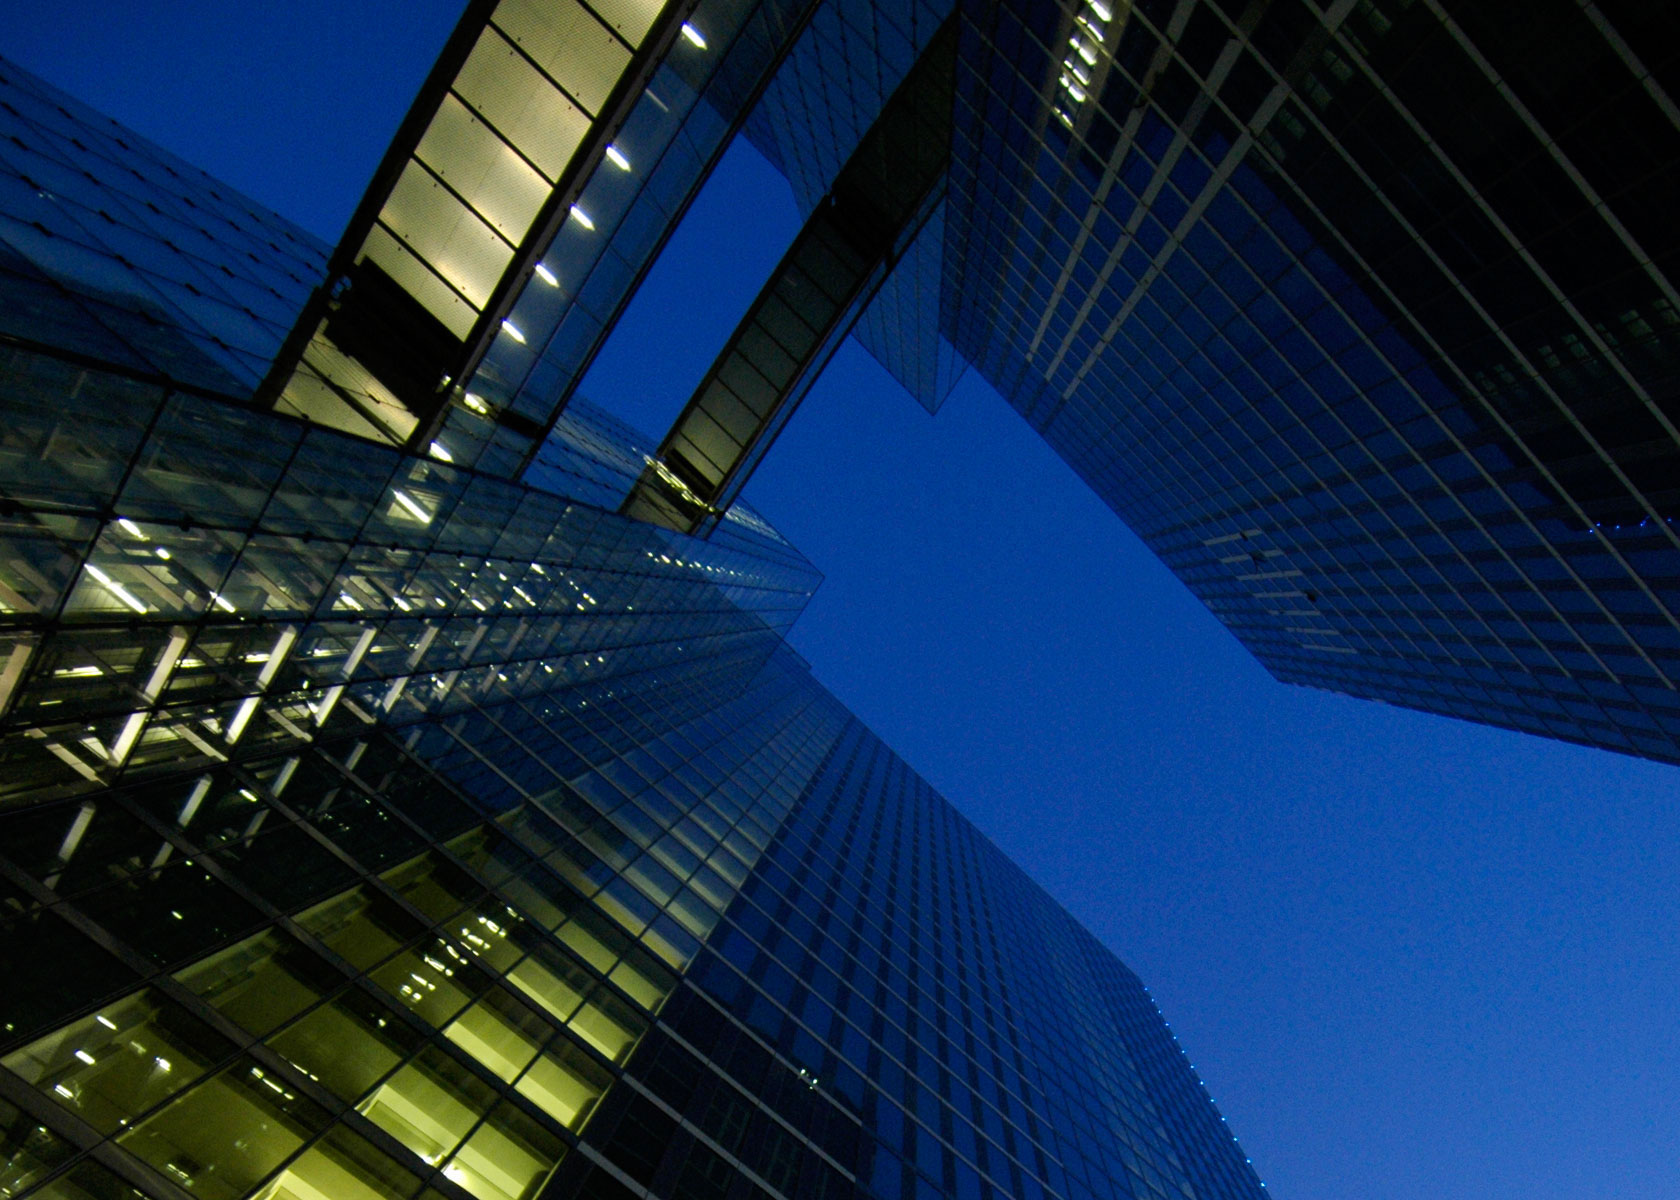 Architekturfotos: Highlight Towers, München